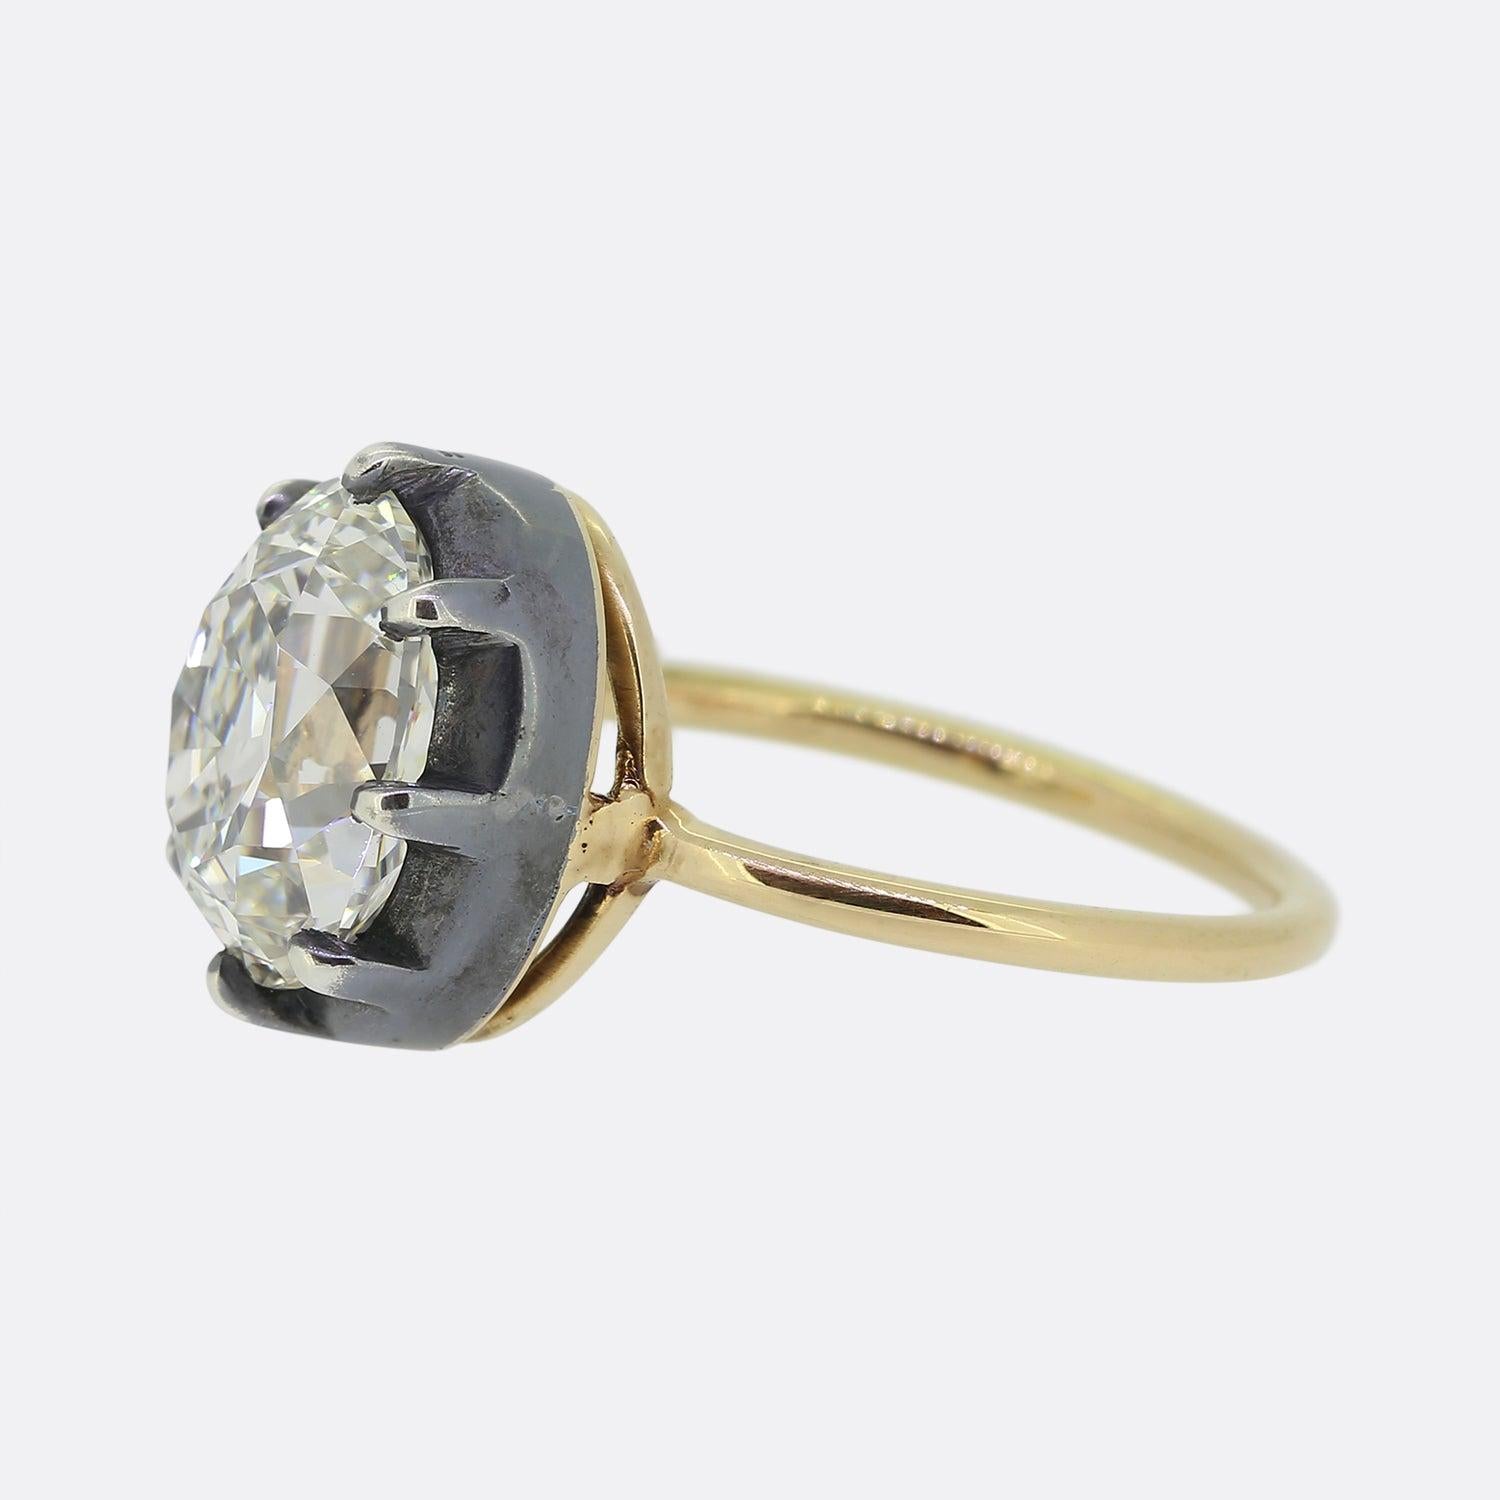 Hier haben wir einen wunderbaren Solitär-Diamantring im georgianischen Stil. Auf einem dünnen Band aus 18-karätigem Gelbgold präsentiert sich auf der Vorderseite ein einzelner ovaler, facettierter Diamant mit altem Schliff, der in einer